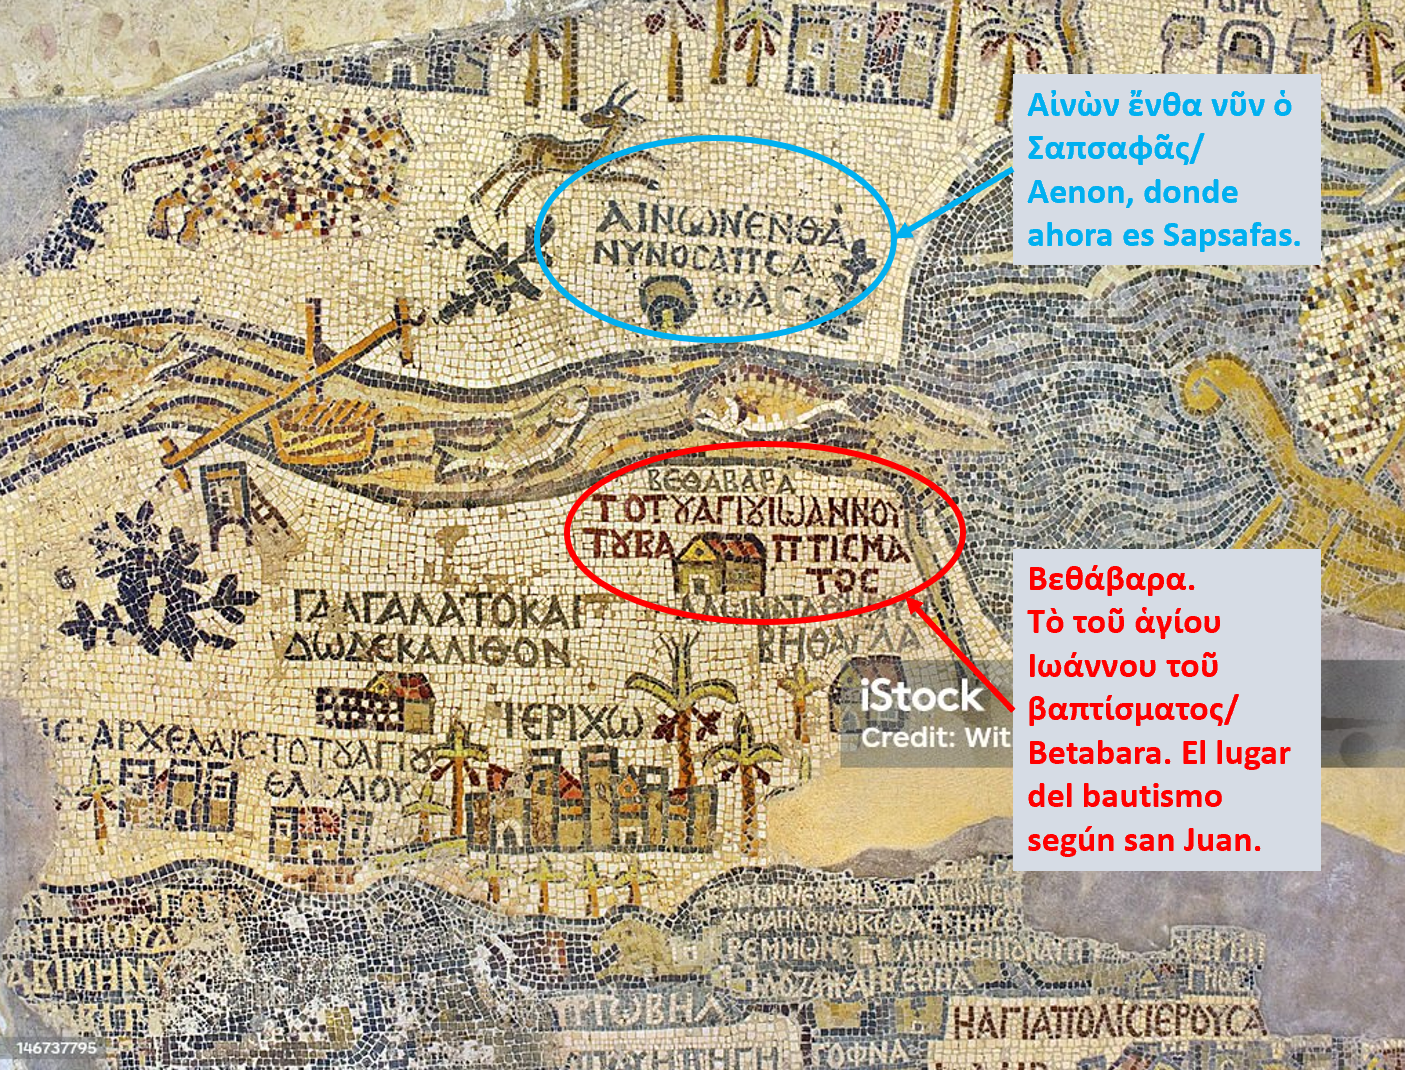 Mapa de Madaba (mosaico del siglo VI, Jordania).